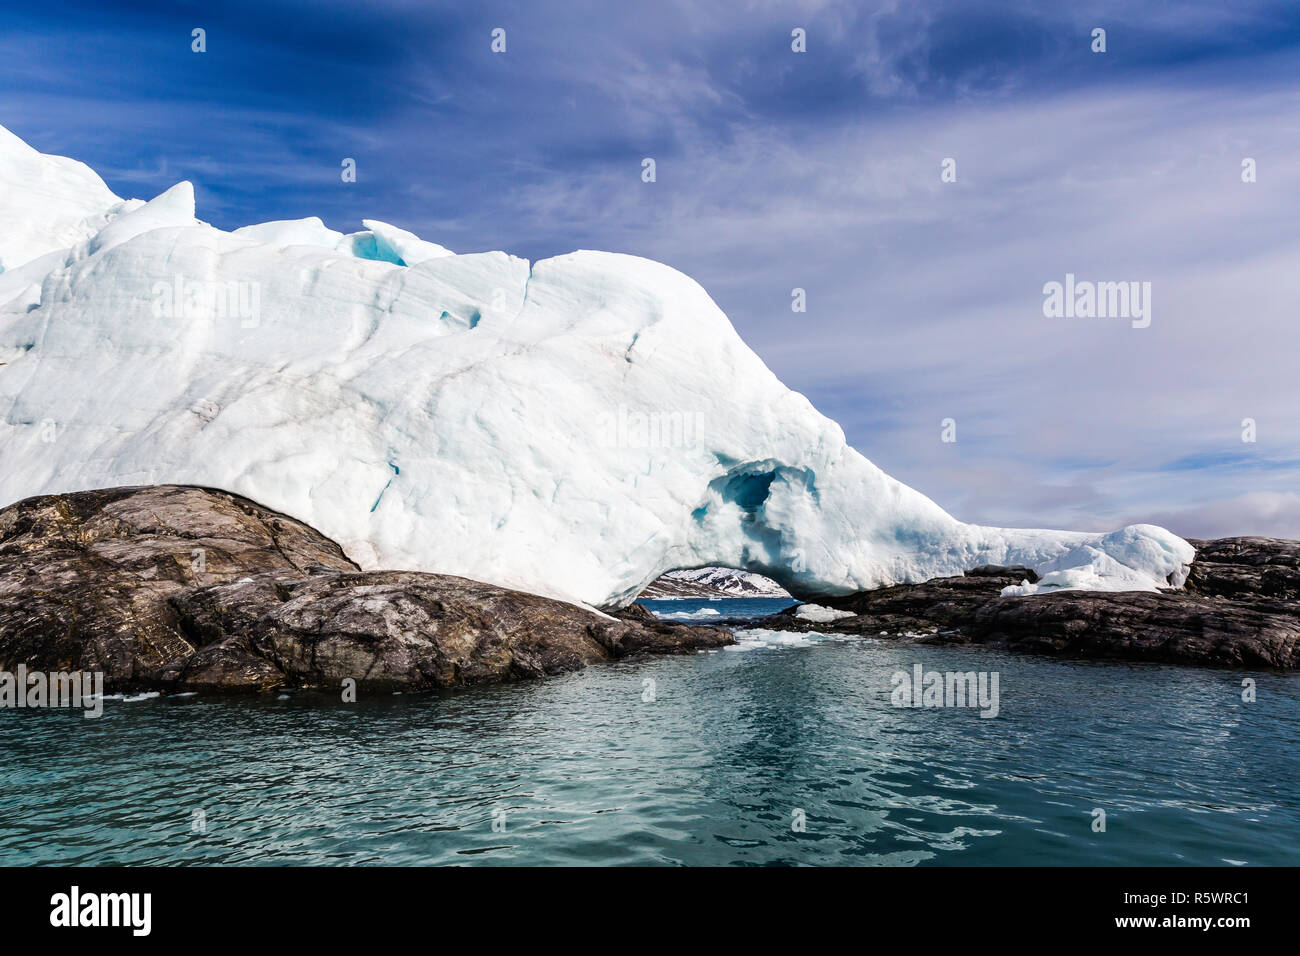 Monacobreen, Monaco Glacier, sur le côté nord-est de l'île de Spitsbergen, Svalbard, Norvège. Banque D'Images